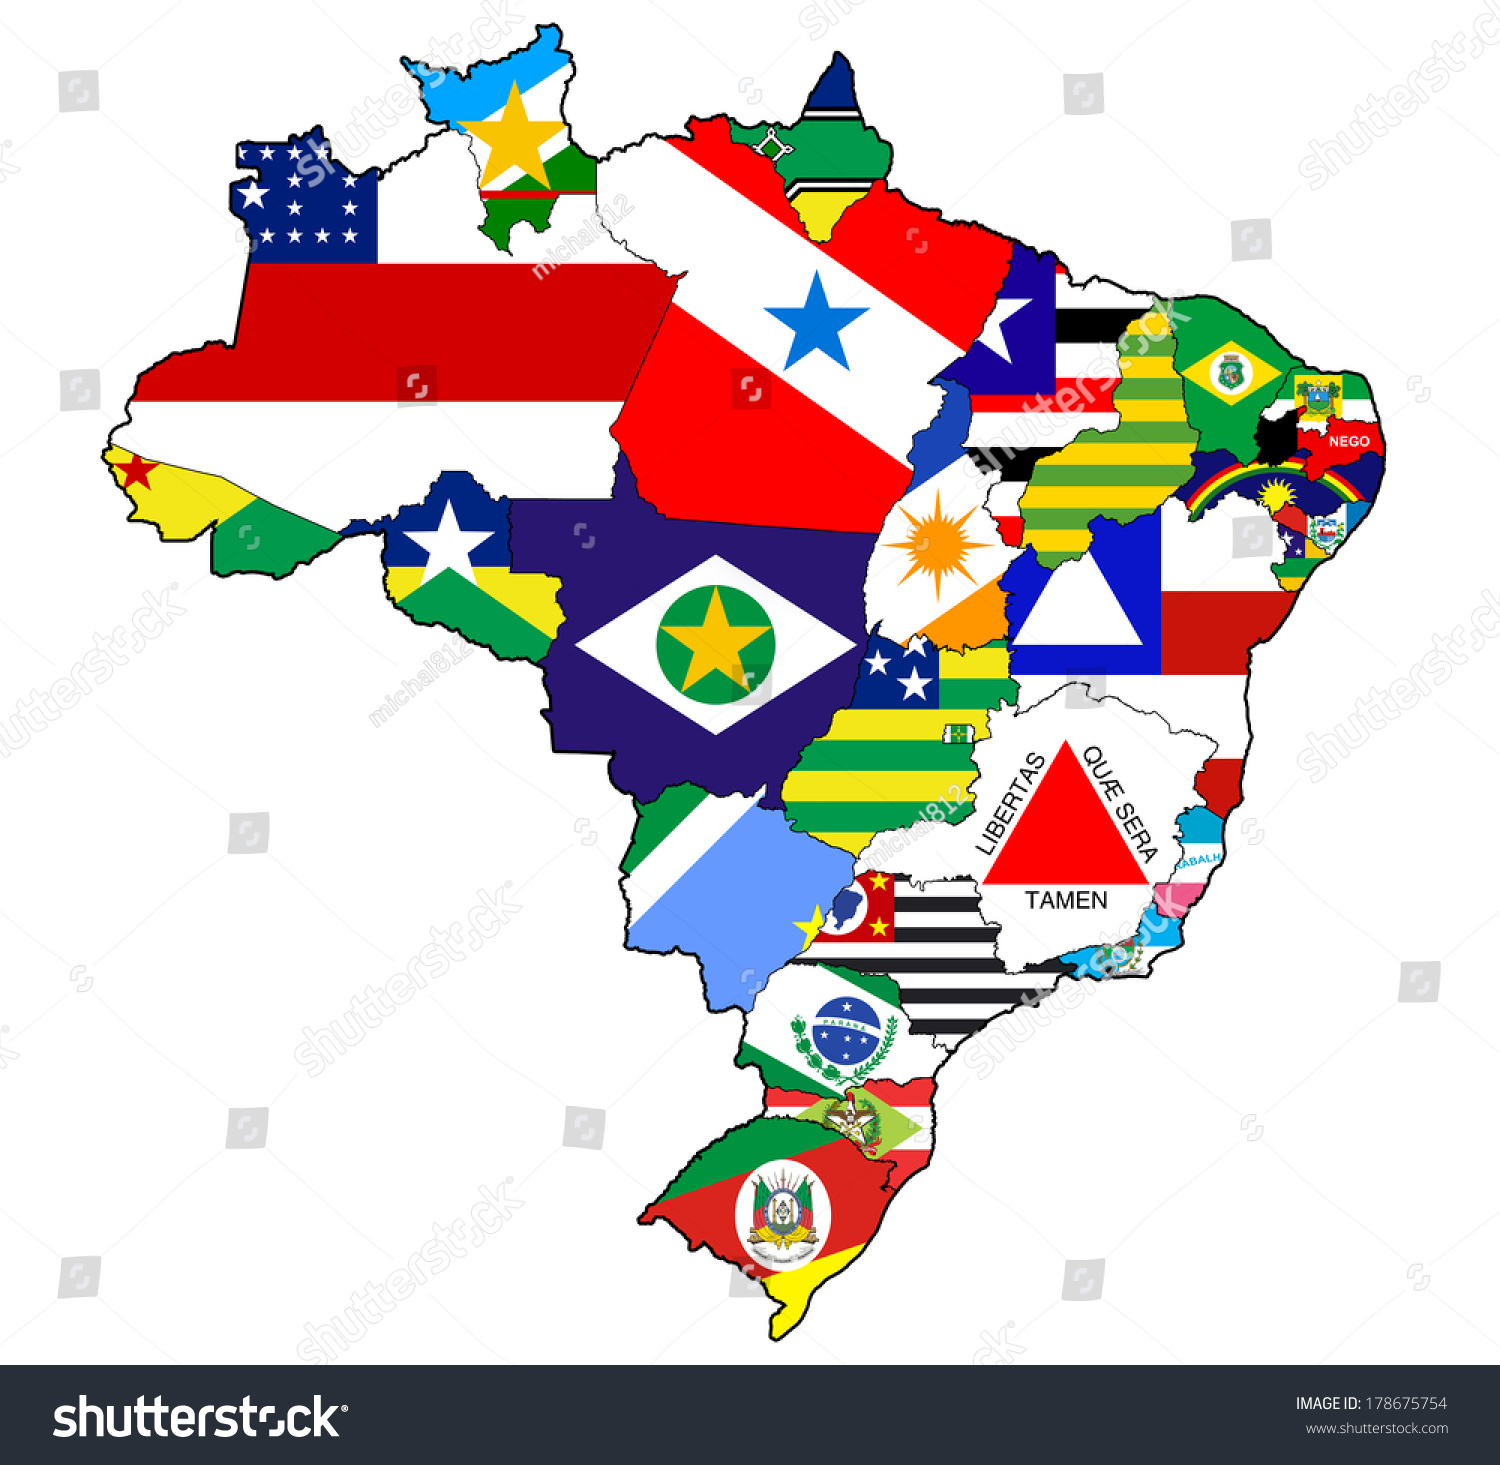 Resultado de imagem para Brazil states flag map